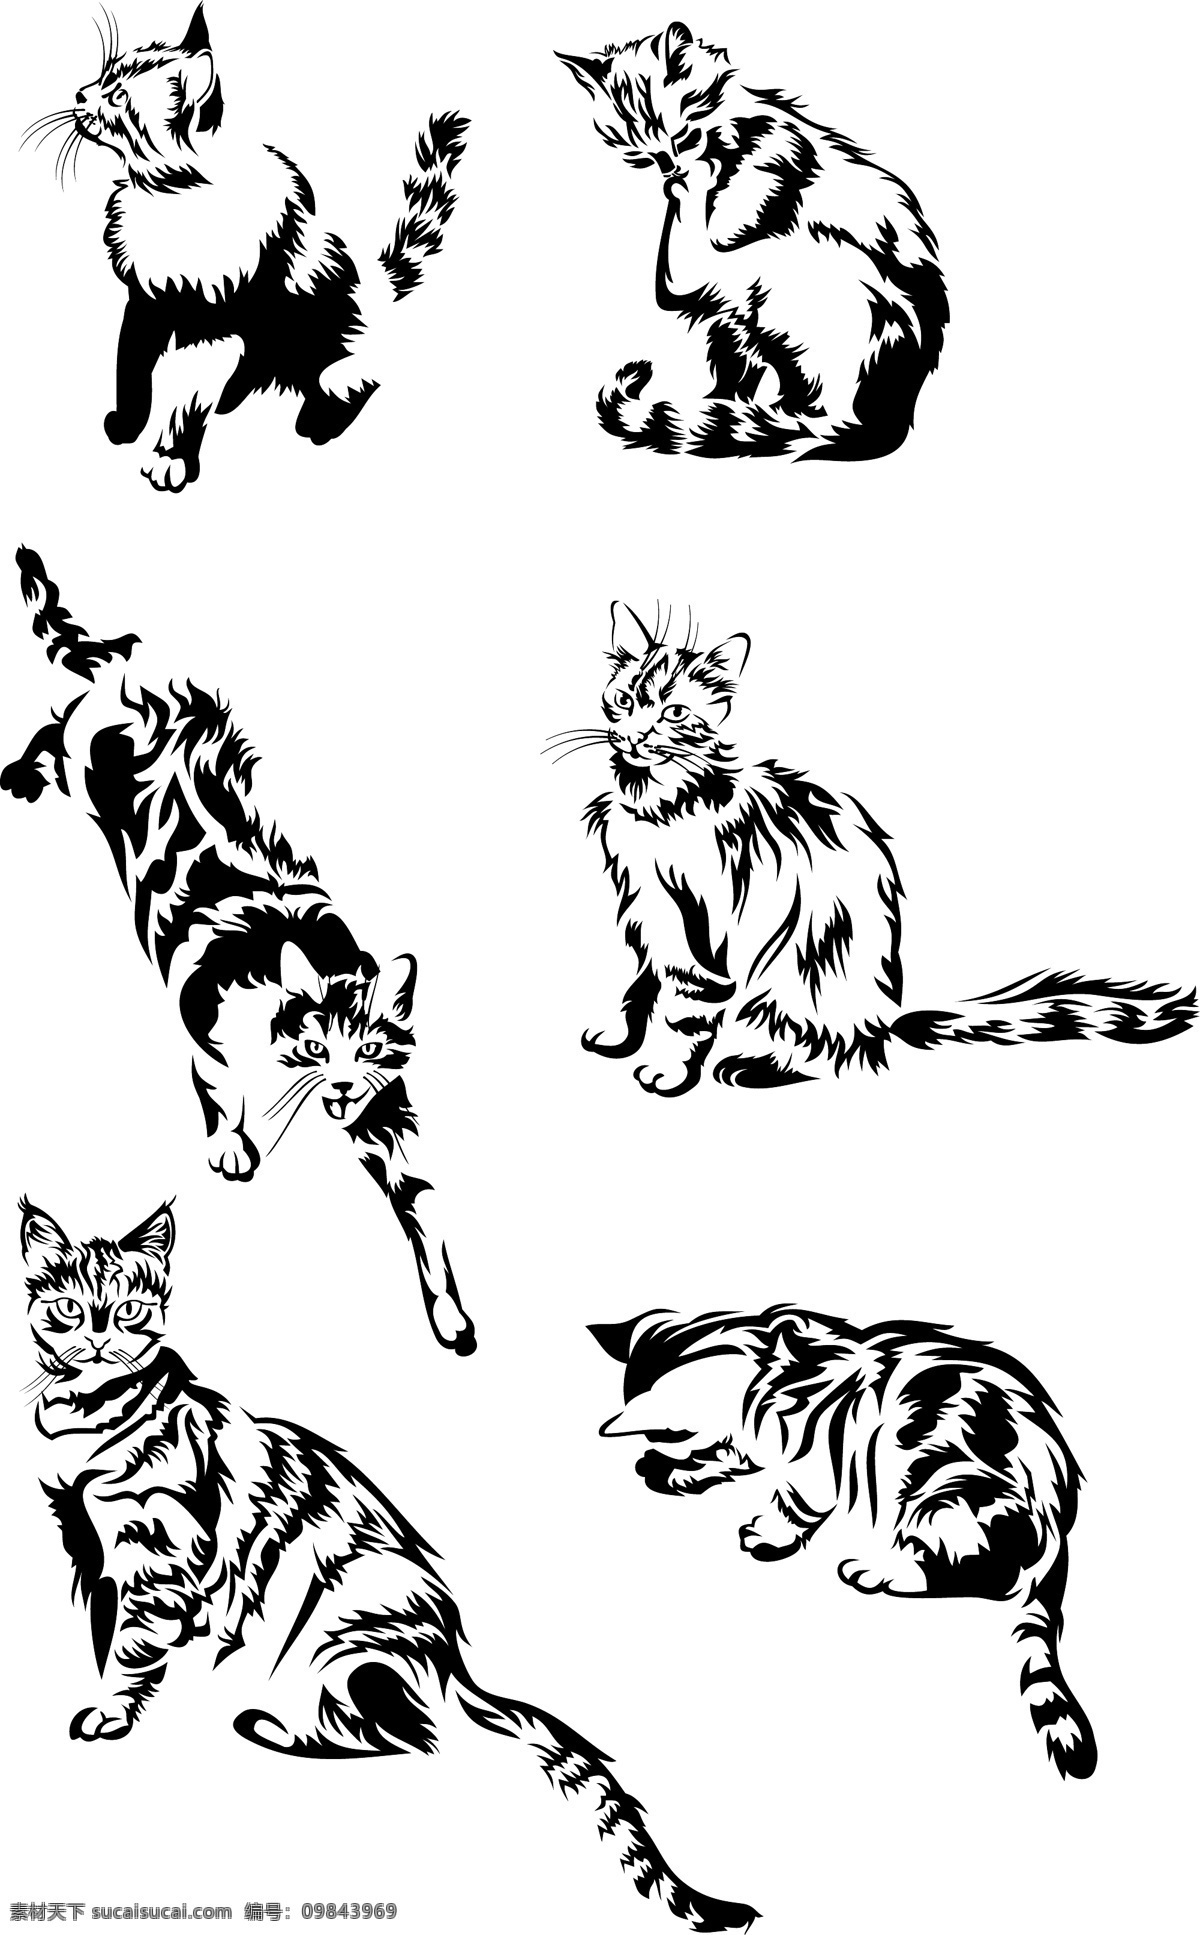 猫咪剪影 卡通 动物 可爱 卡通生物 动物剪影 猫咪 陆地动物 生物世界 矢量素材 白色